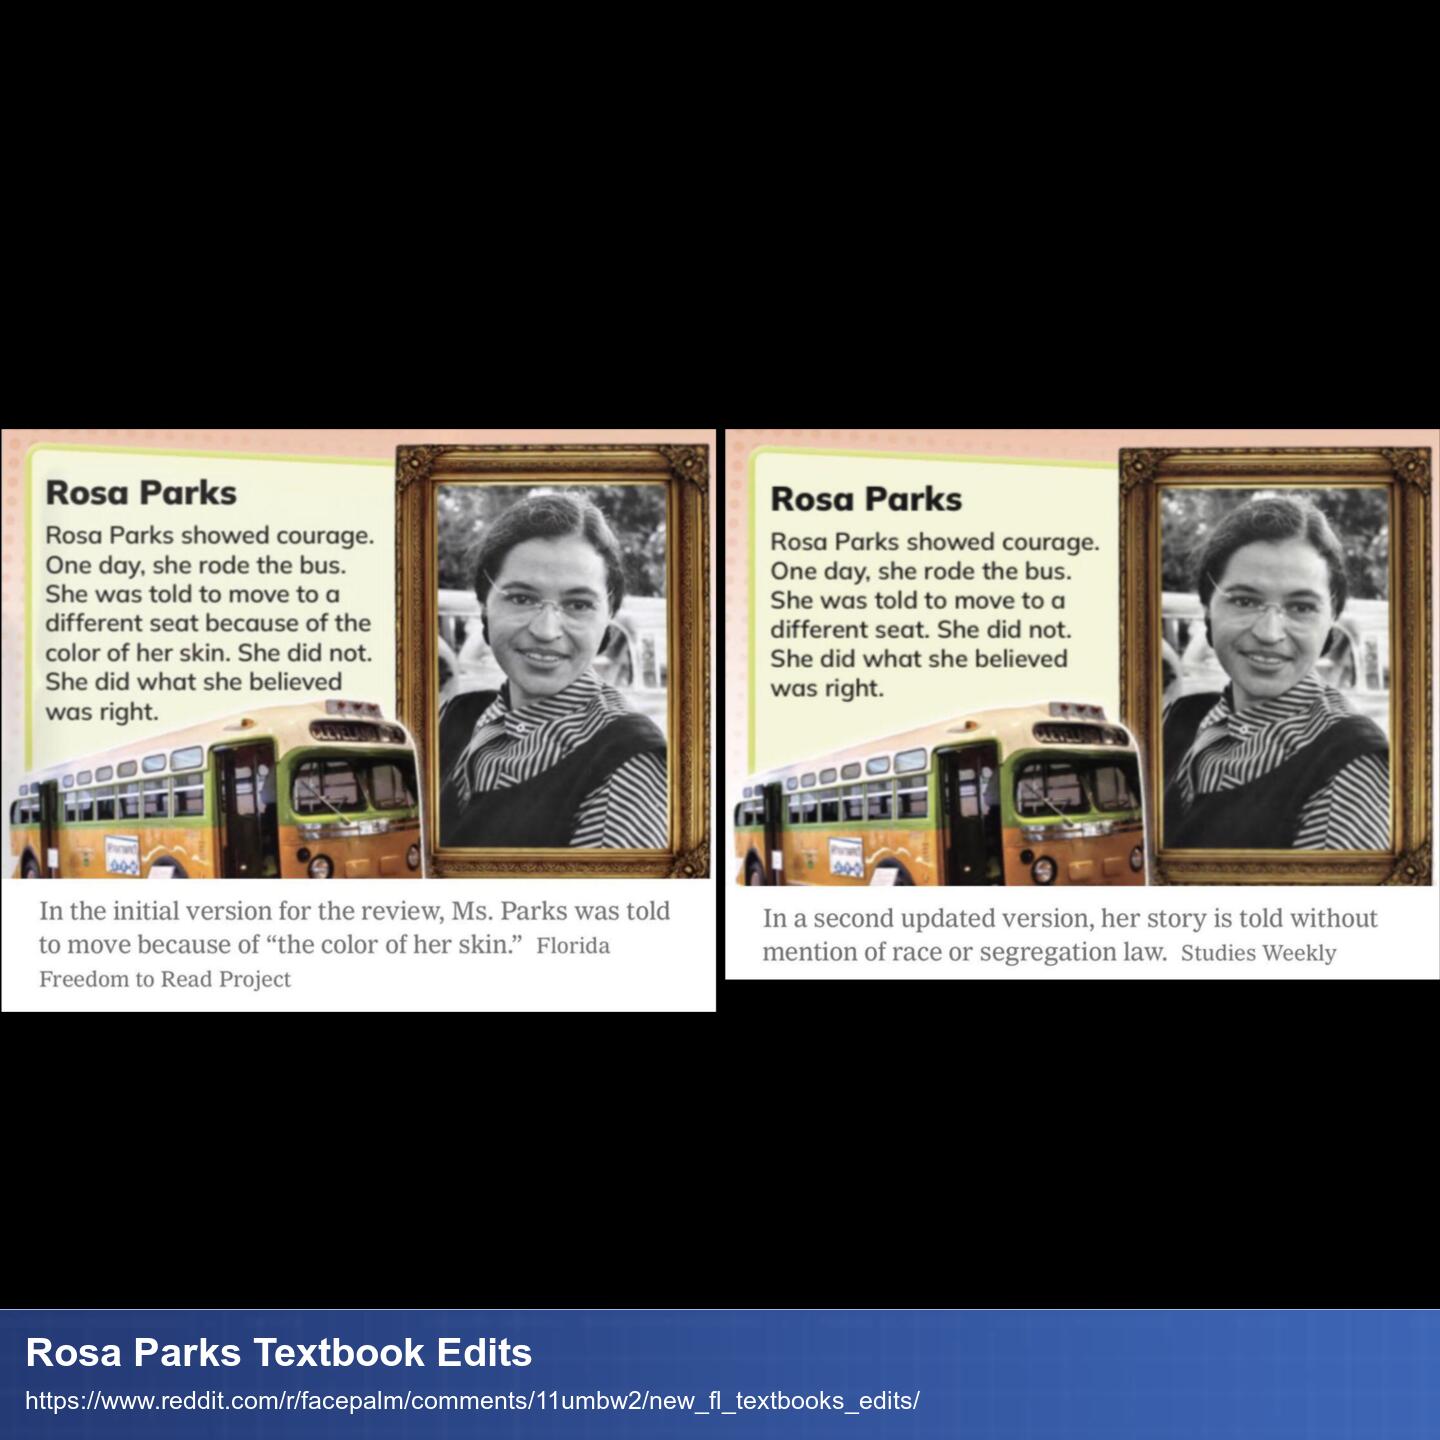 Vergleich zwischen 2 Versionen eines Artikels über Rosa Parks. Man sieht den geänderten Text und ein Foto von ihr.